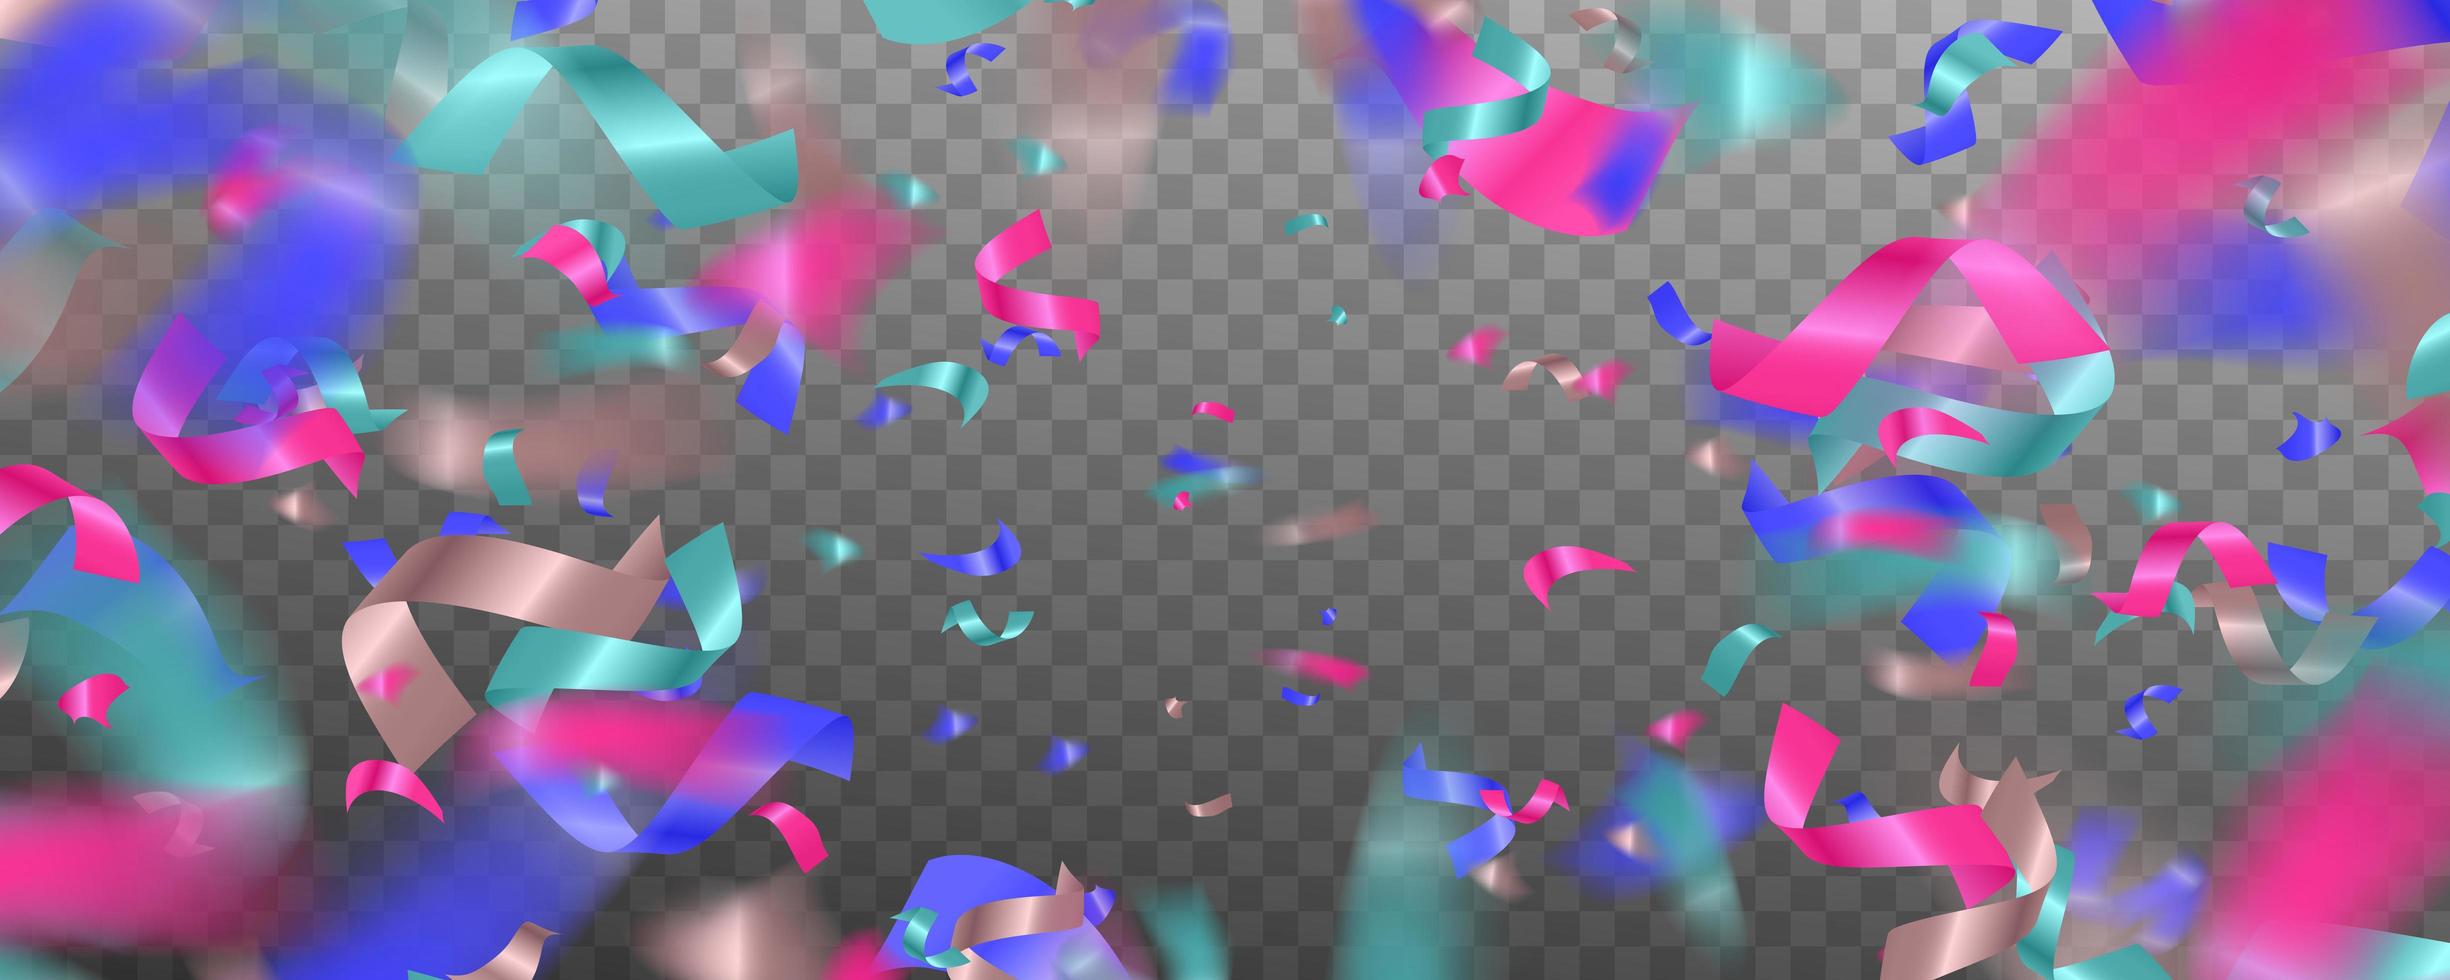 confetes brilhantes coloridos isolados em fundo transparente. fundo abstrato com muitos pedaços de confetes minúsculos caindo. vetor